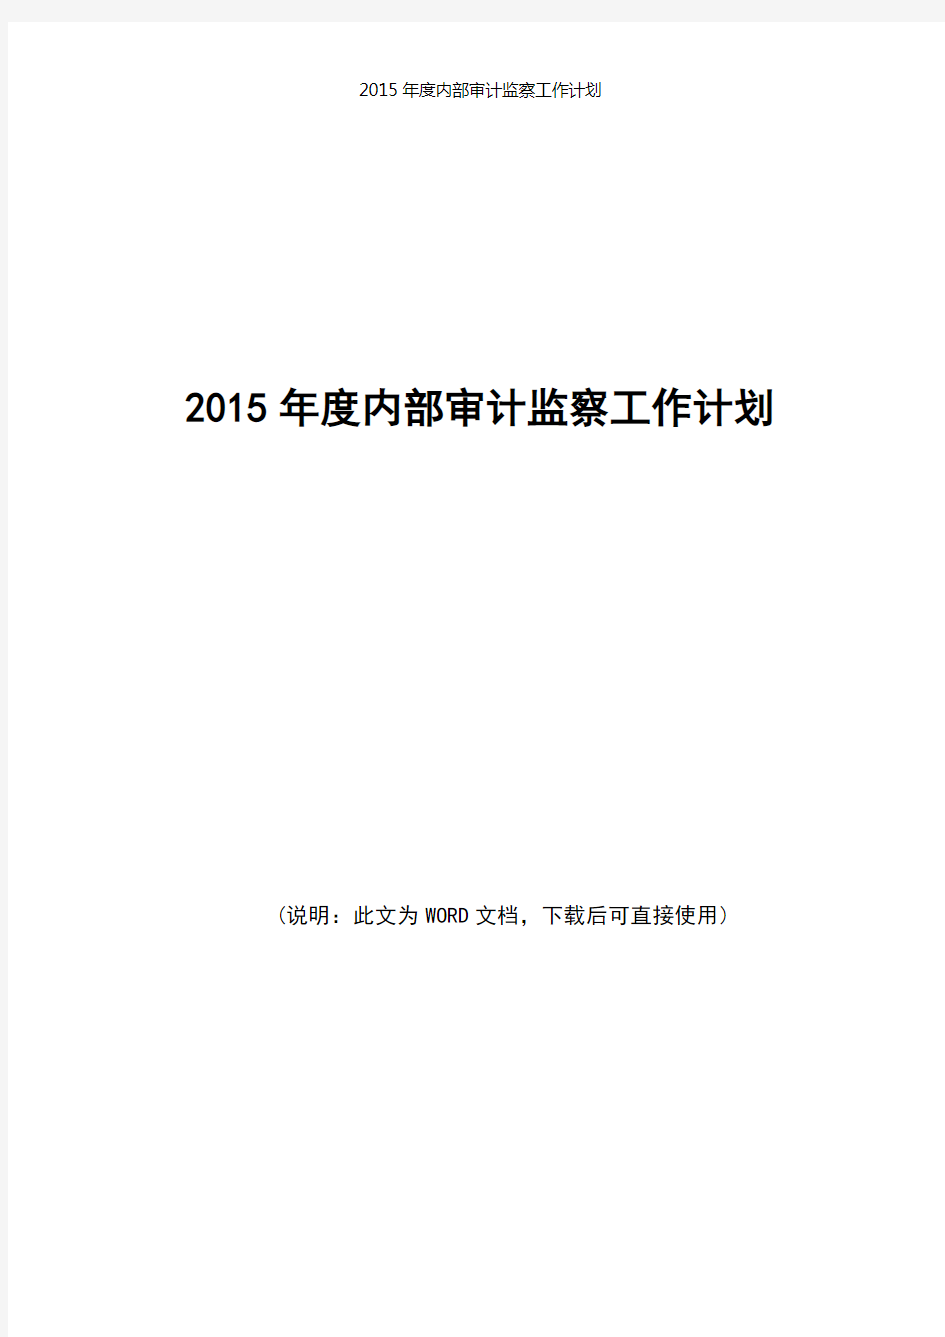 2015年度内部审计部工作总结